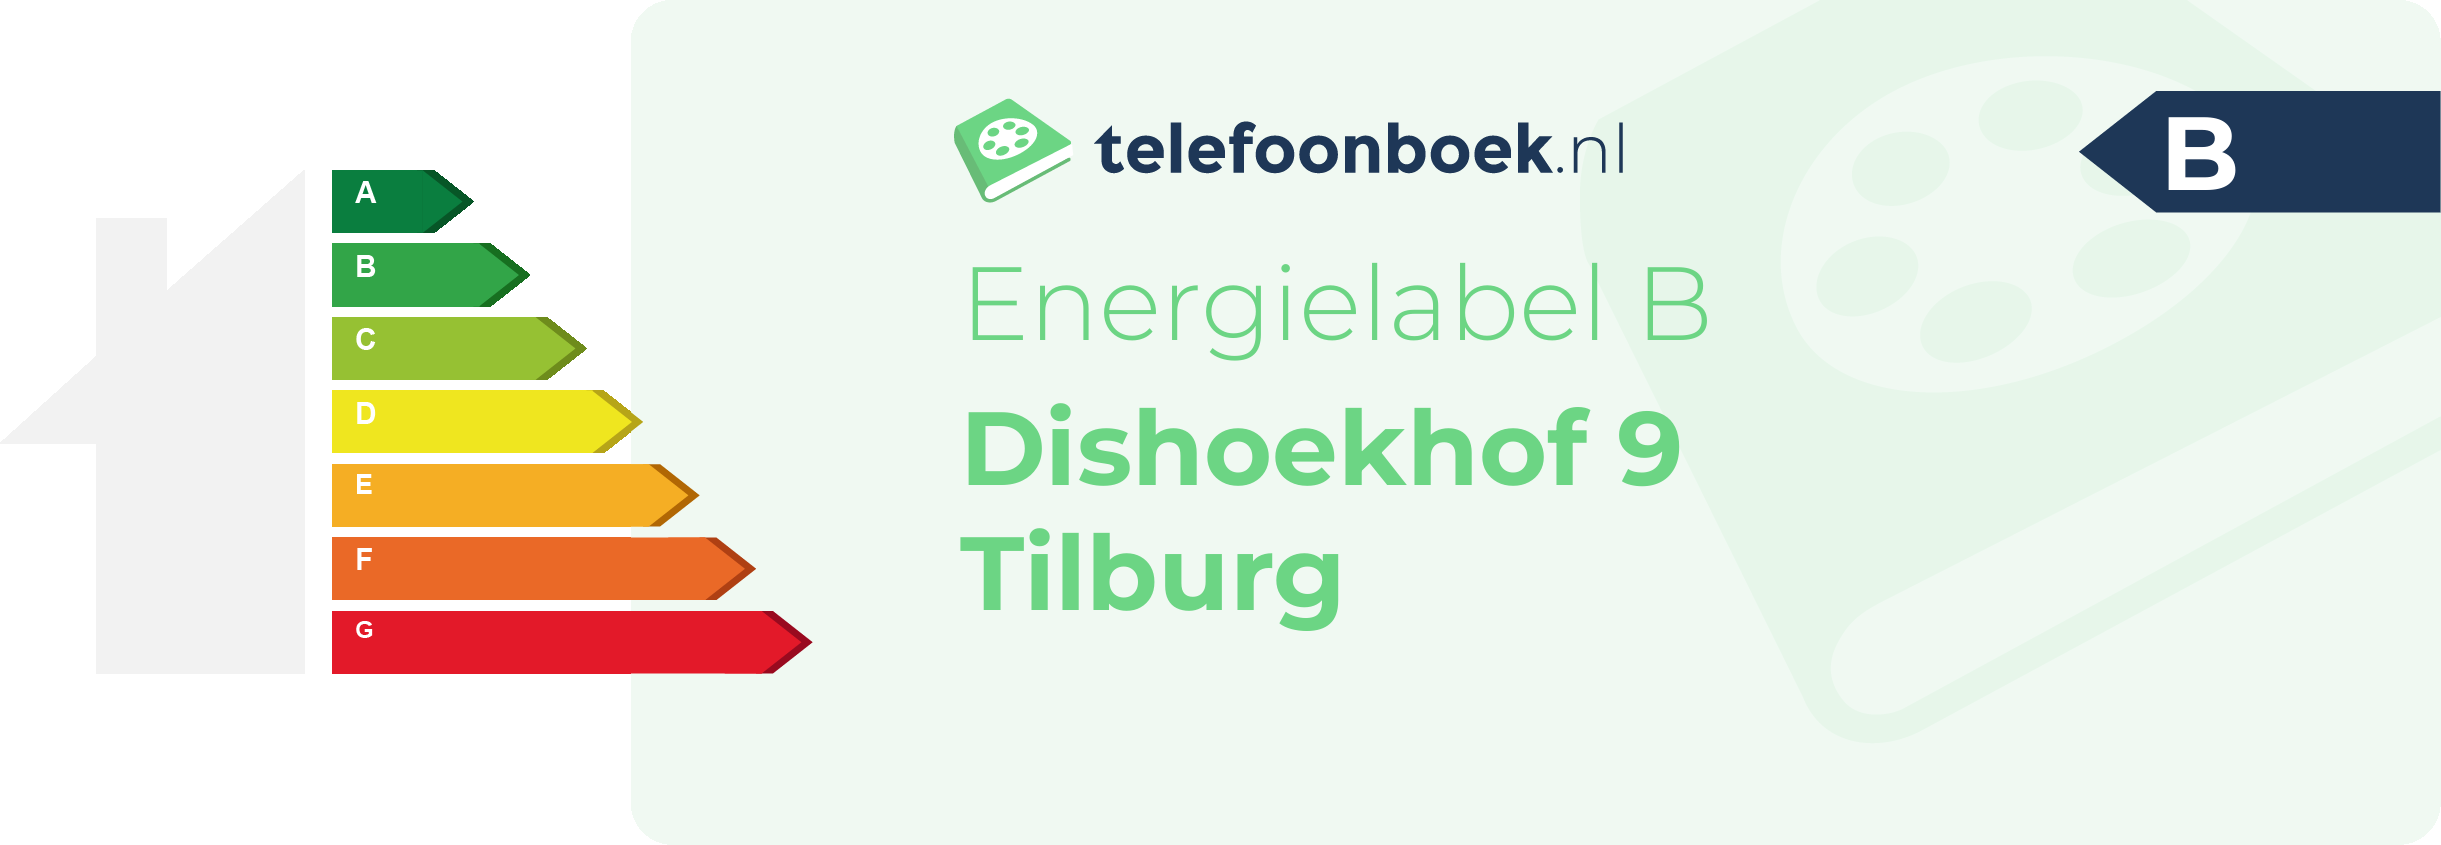 Energielabel Dishoekhof 9 Tilburg